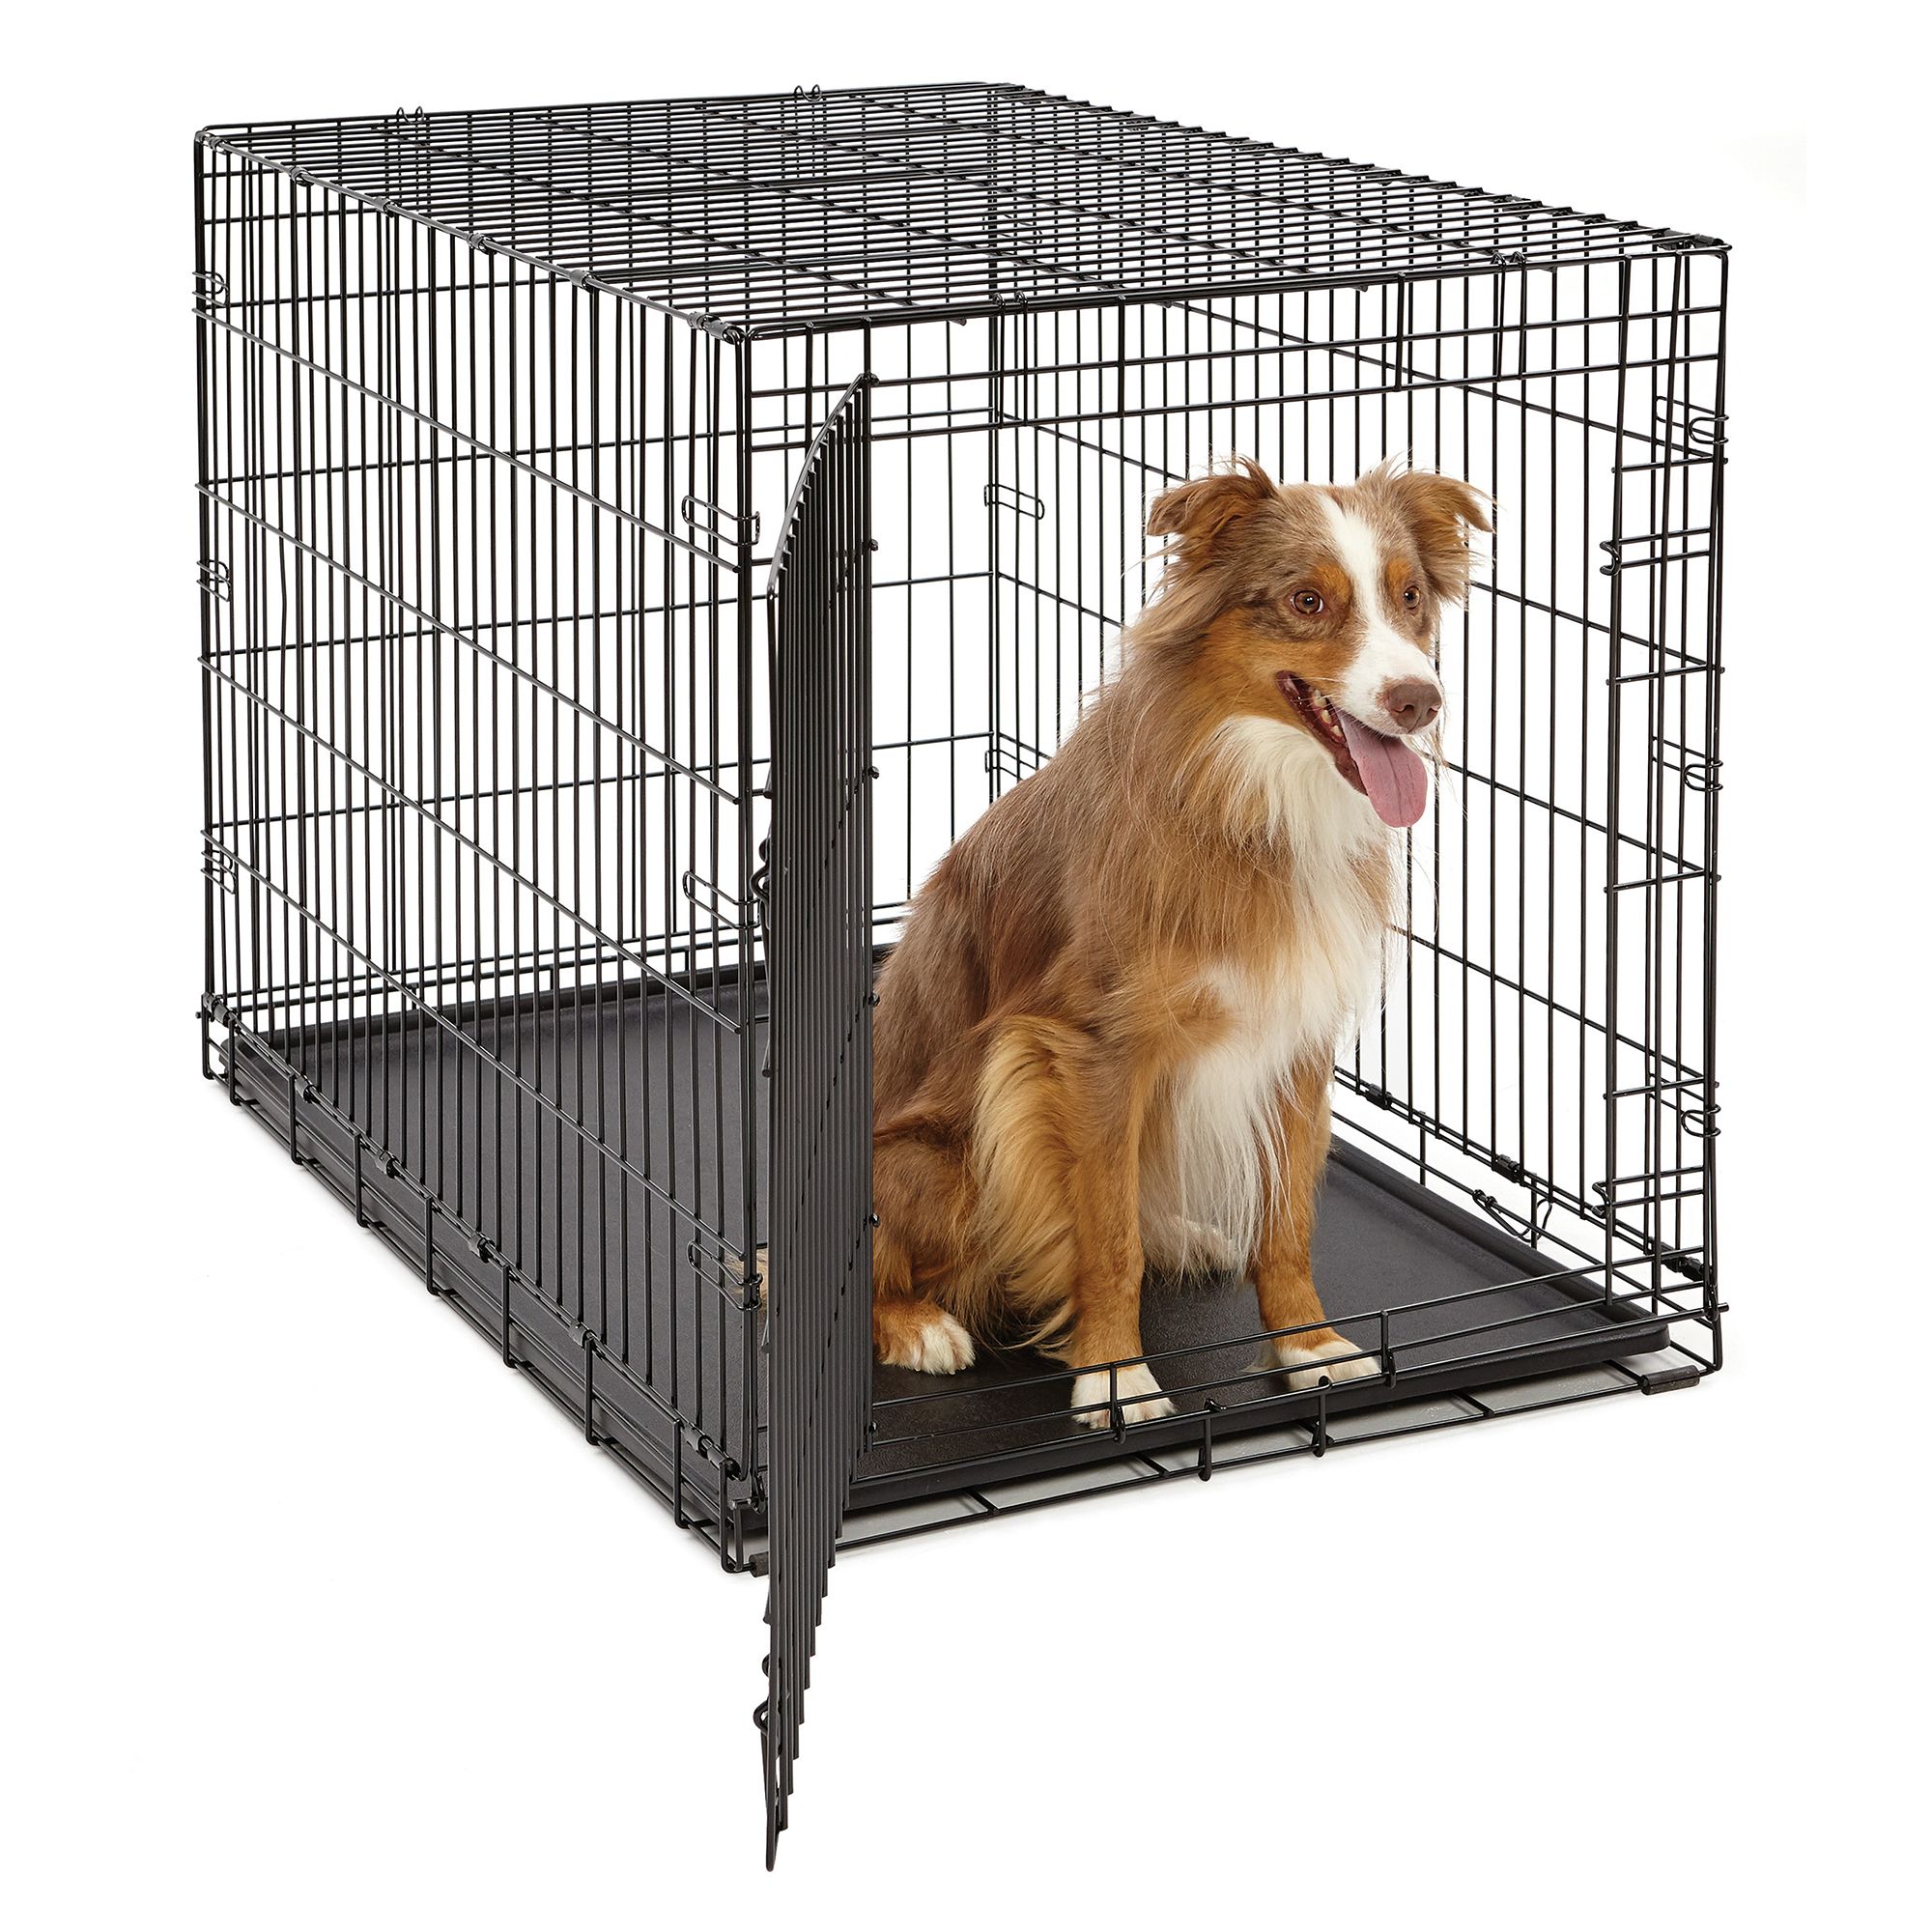 petsmart small dog crate